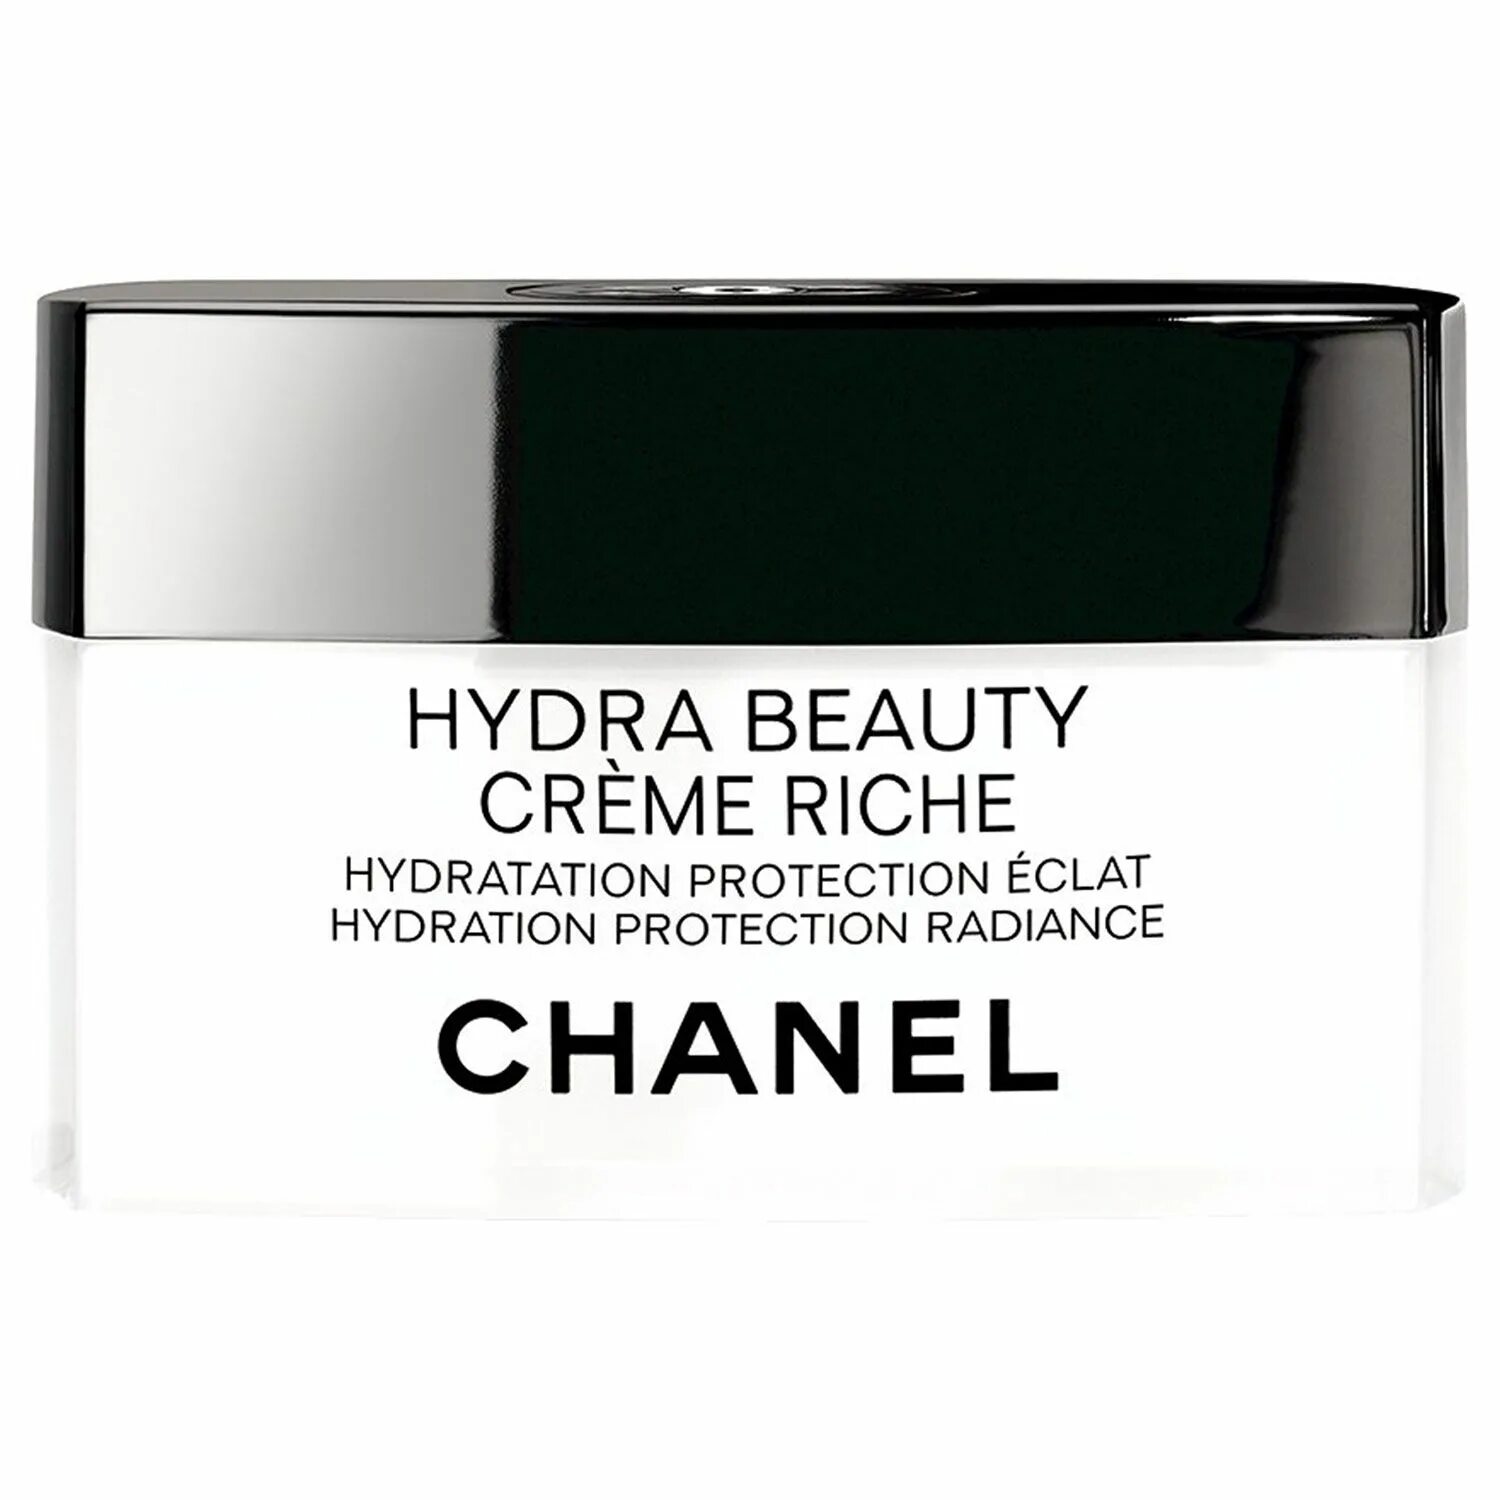 Chanel hydra Beauty Creme. Крем Шанель для лица +50 с лифтинг эффектом. Hydra Beauty Nutrition Chanel. Chanel hydra Beauty Gel Creme.